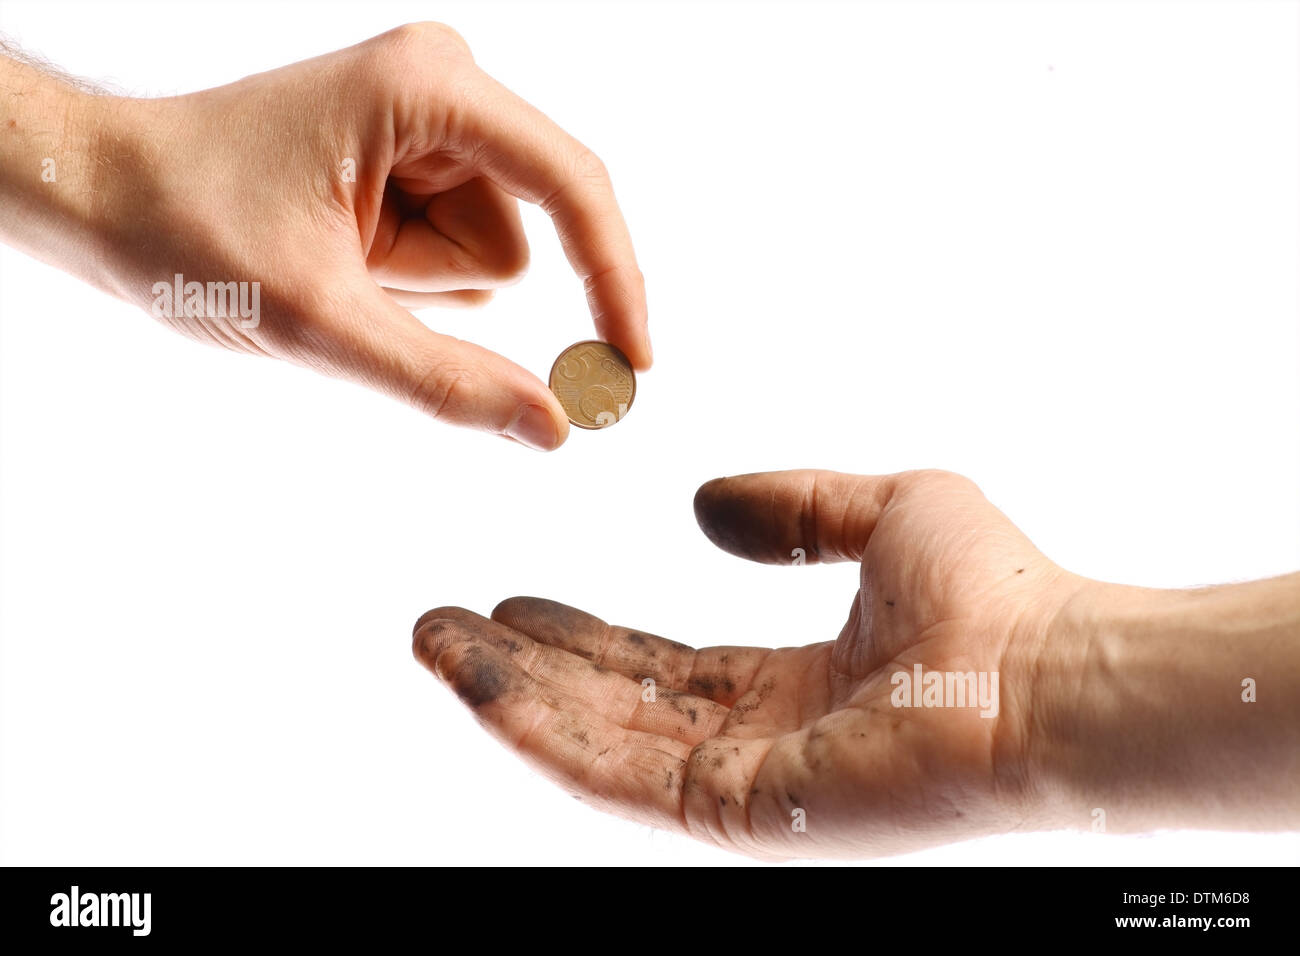 Eine saubere Hand eine Münze in eine schmutzige Hand bieten. Stockfoto